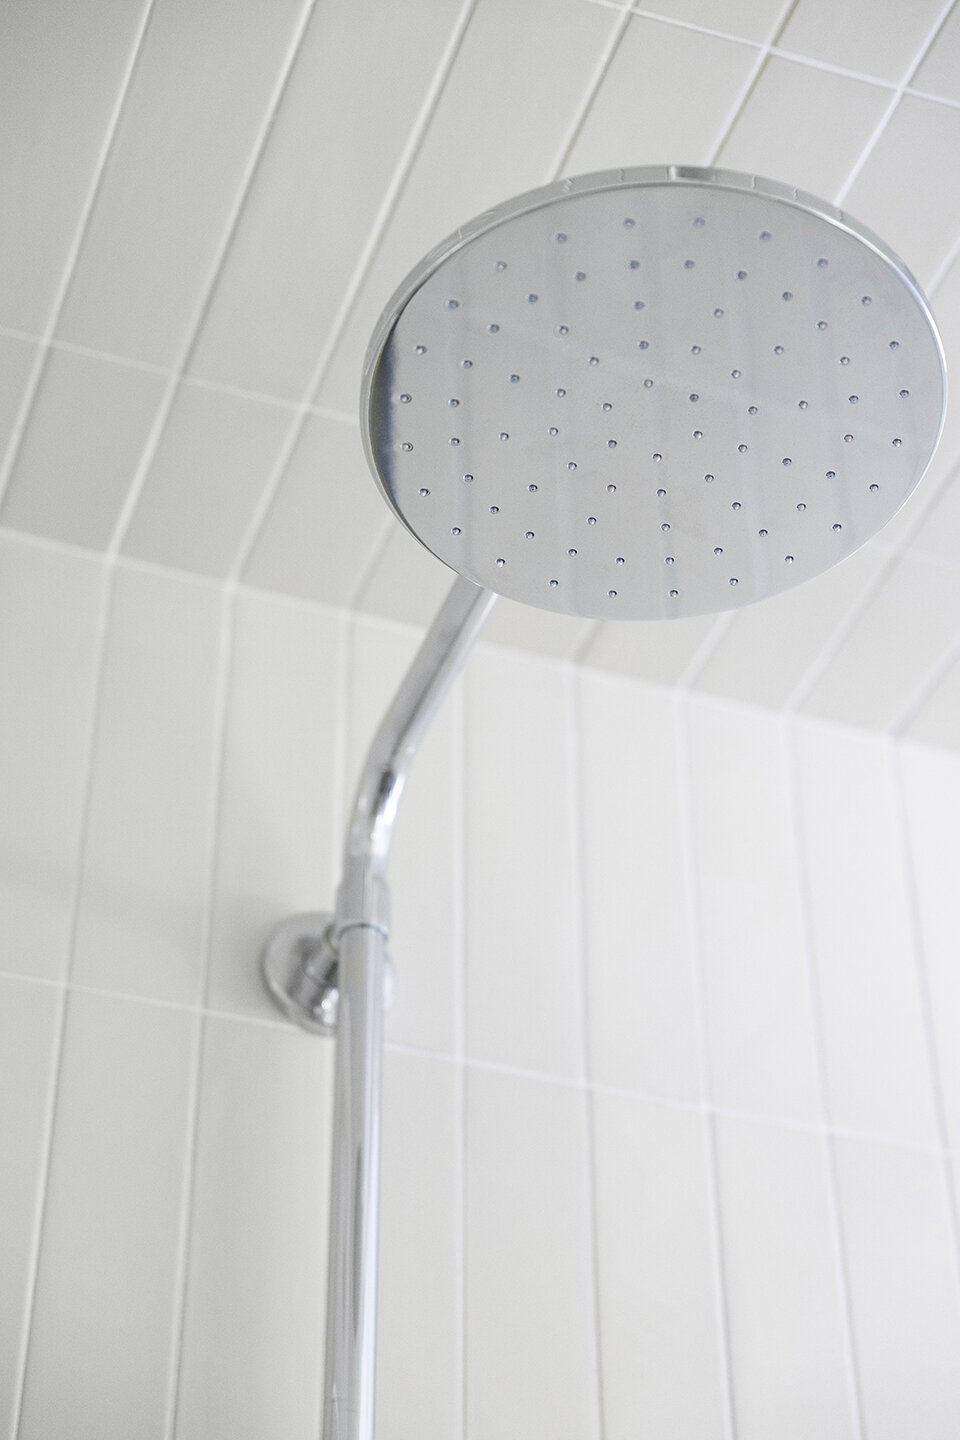 Custom-Shower-Chartreuse-Tile-Showerhead-Detail.jpg